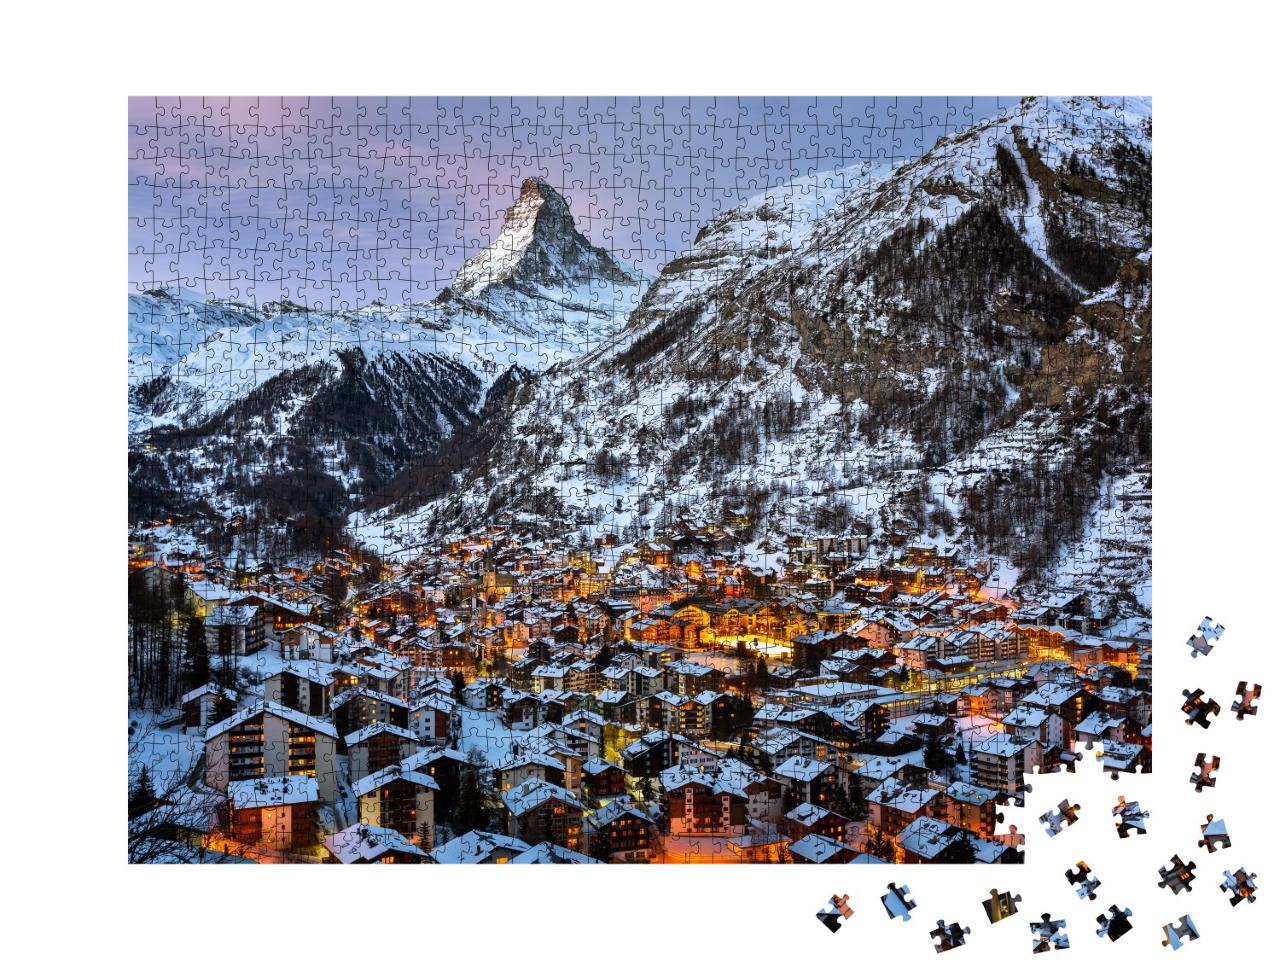 Puzzle de 1000 pièces « Vue aérienne de la vallée de Zermatt et du sommet du Cervin »